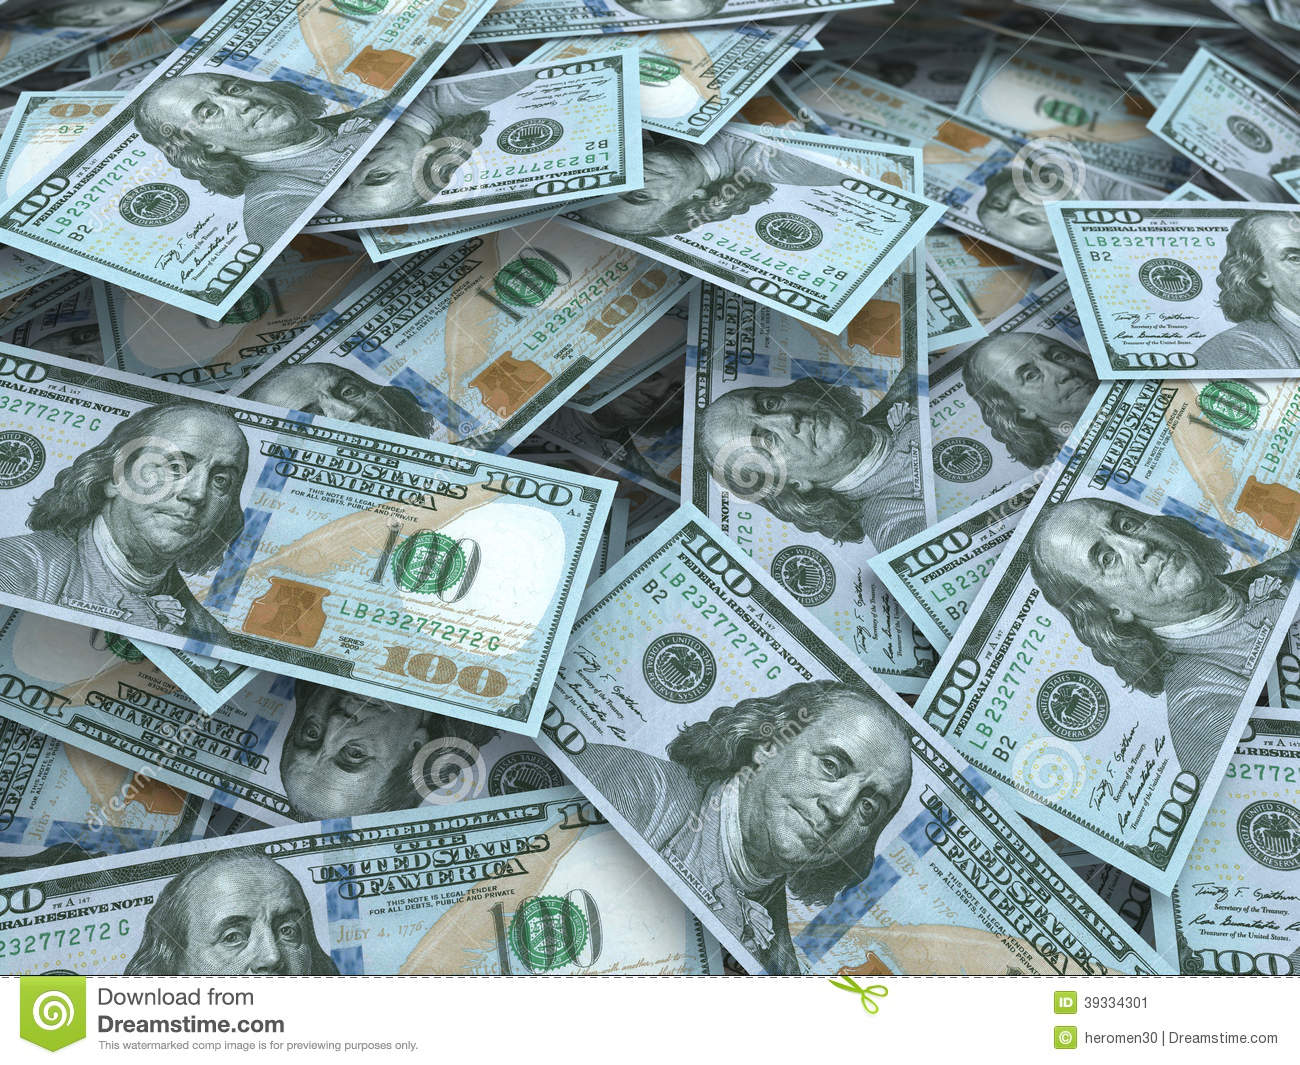 100ドル札の壁紙,お金,現金,紙幣,ドル,お金の取り扱い